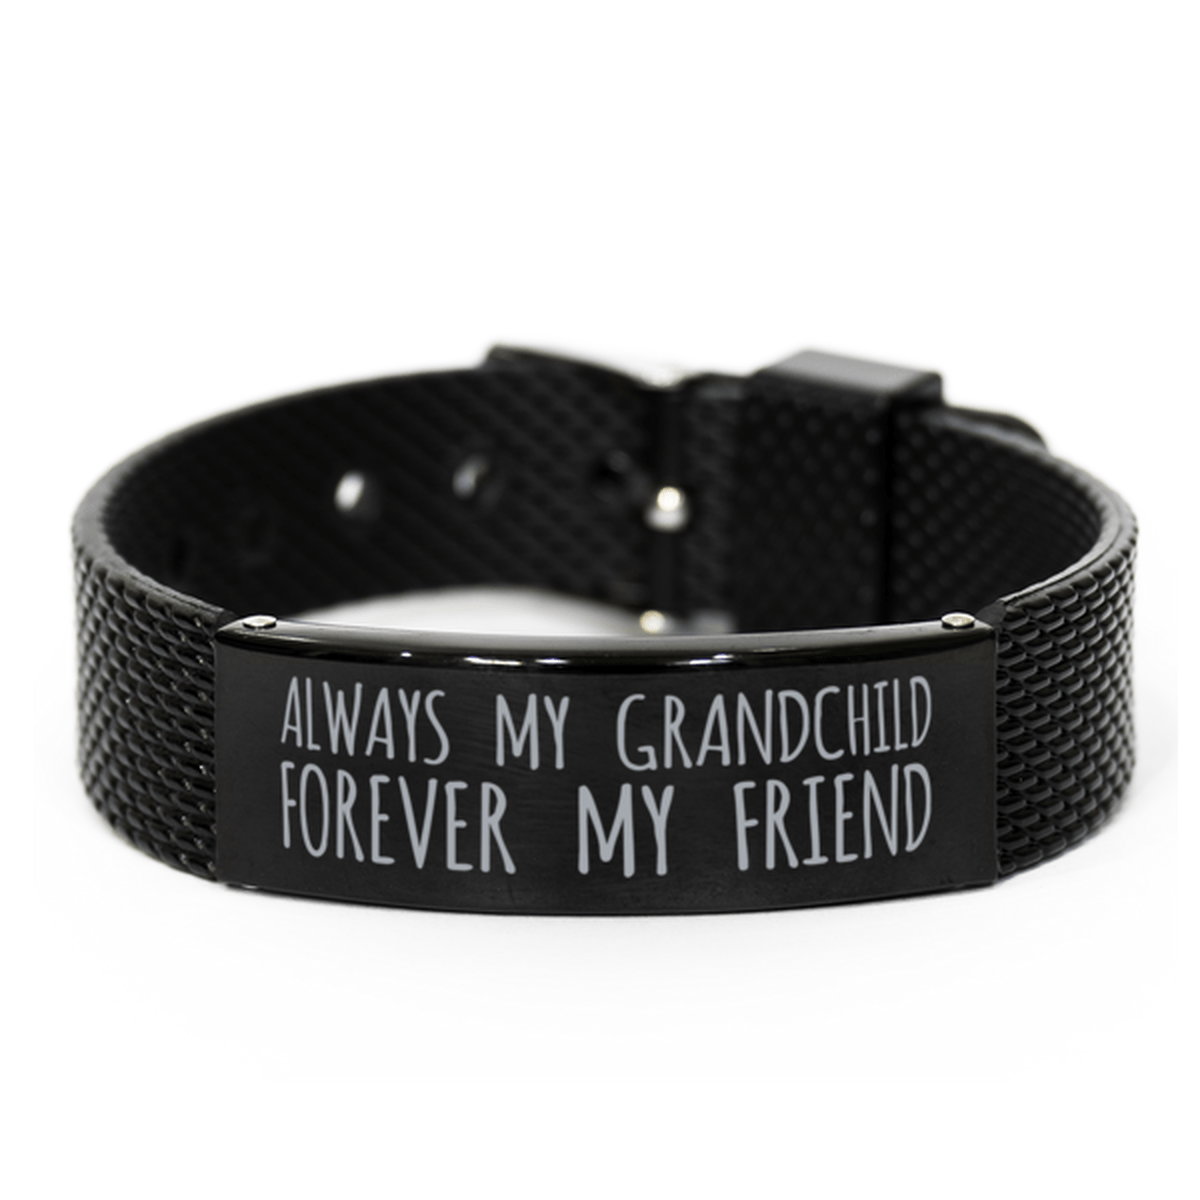 Inspirational Grandchild Black Shark Mesh Bracelet, Always My Grandchild Forever My Friend, Best Birthday Gifts for Family Friends